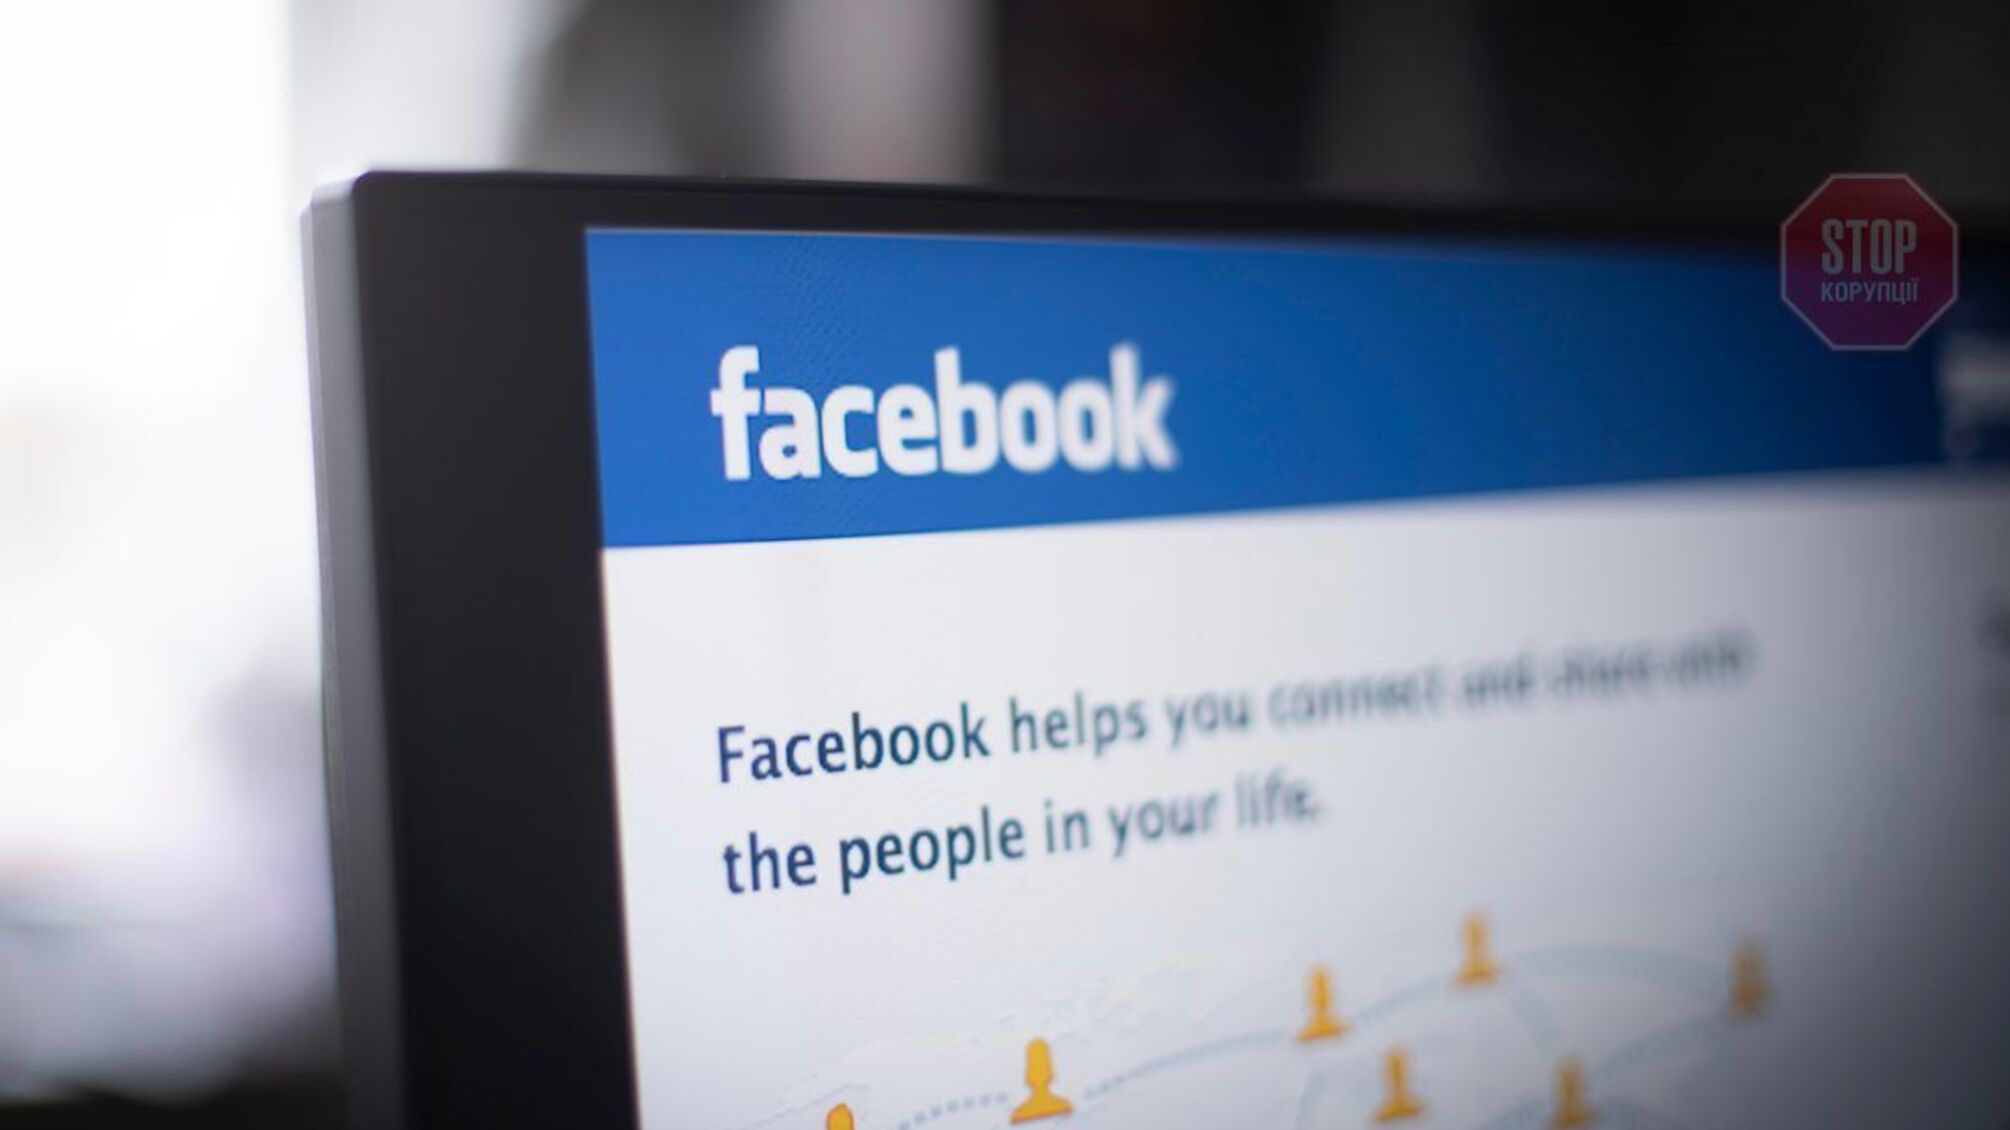 Facebook звинуватив українця у крадіжці даних 178 млн користувачів